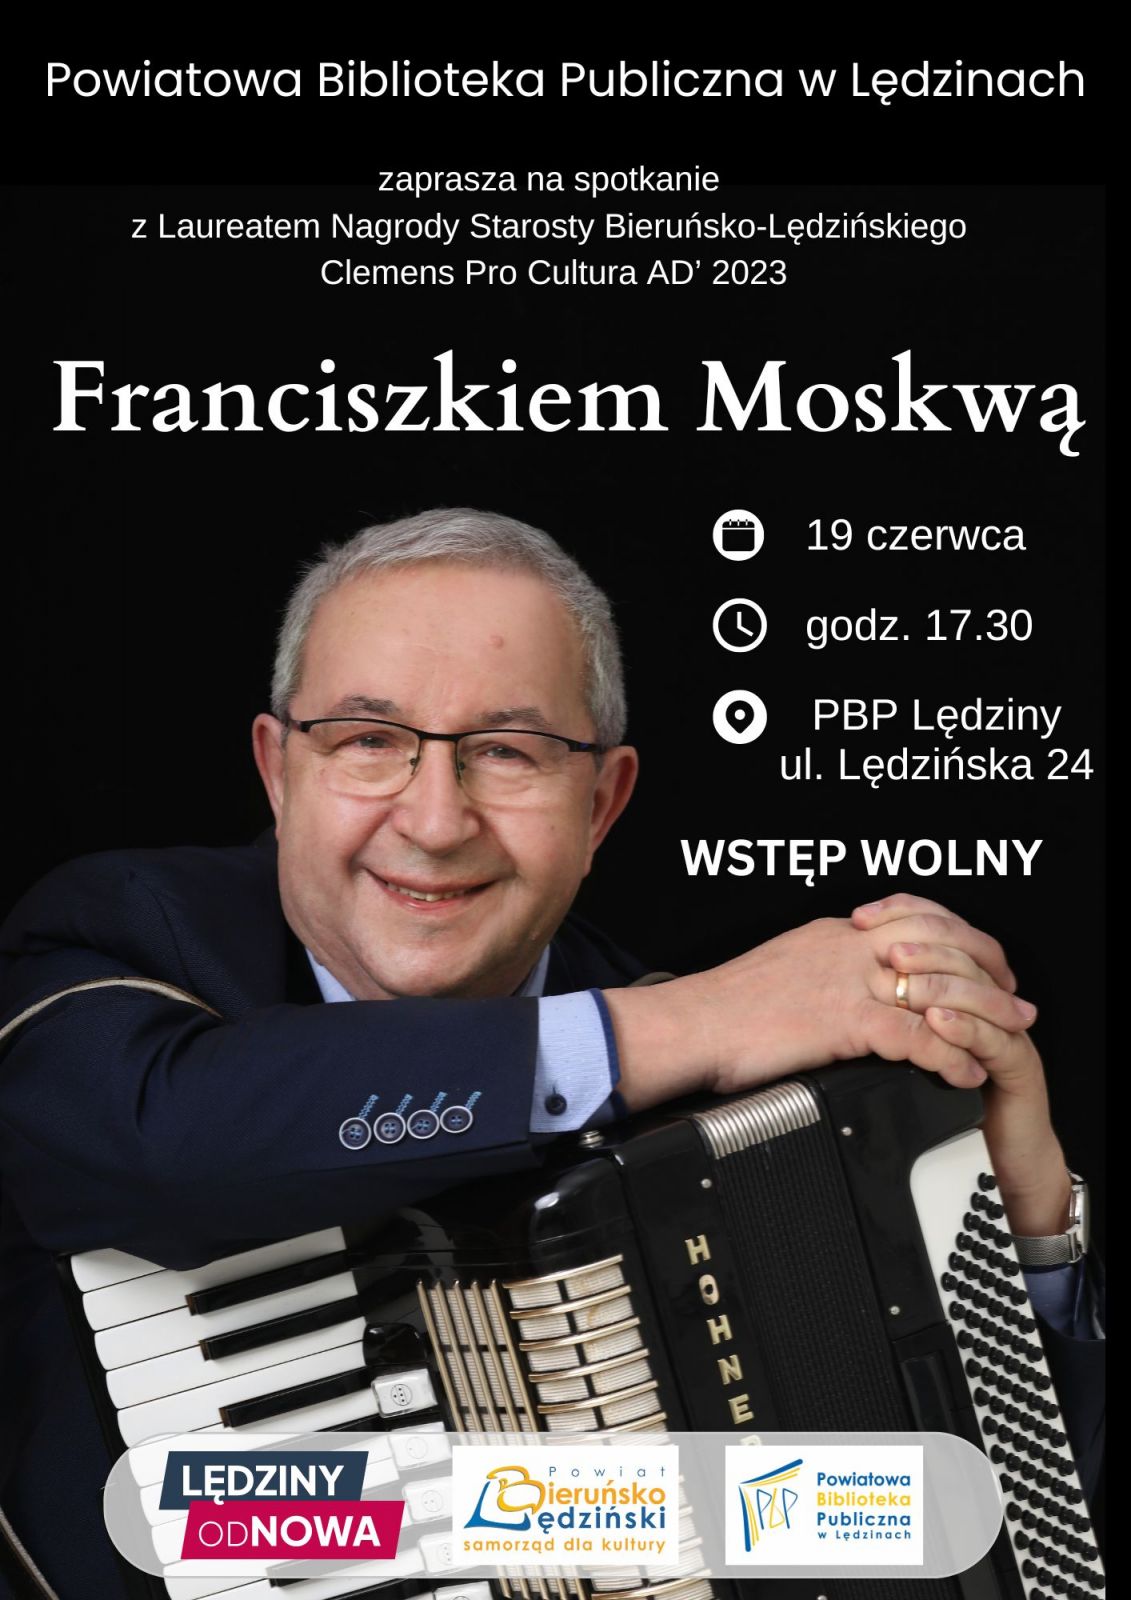 Plakat informacyjny, na czarmym tle zdjęcie Frnanciszka Moskwy z akordeonem